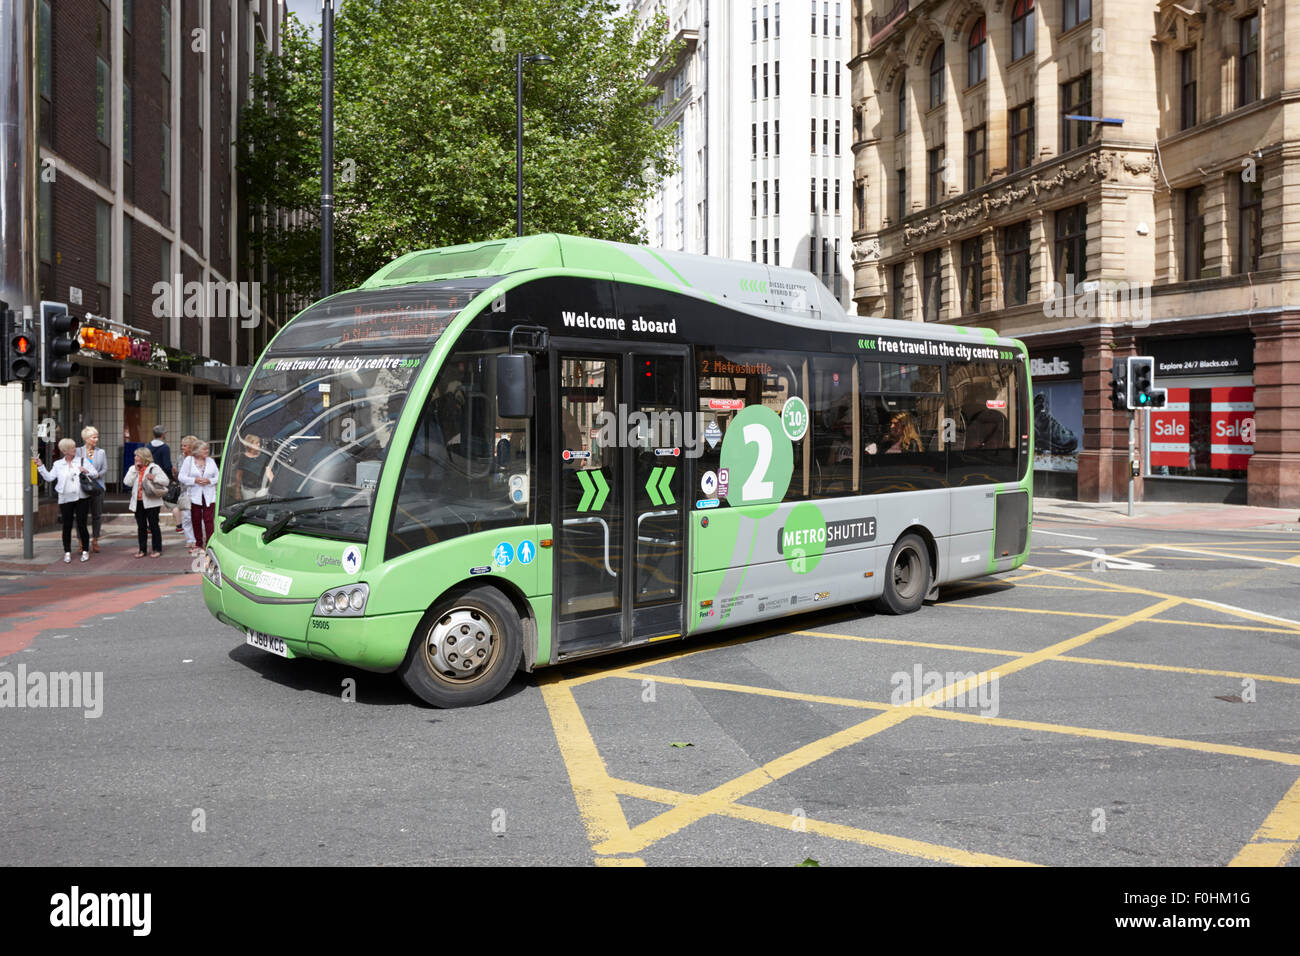 Gratis Shuttle Metro-grüne Buslinie zwei im Stadtzentrum von Manchester England UK Stockfoto